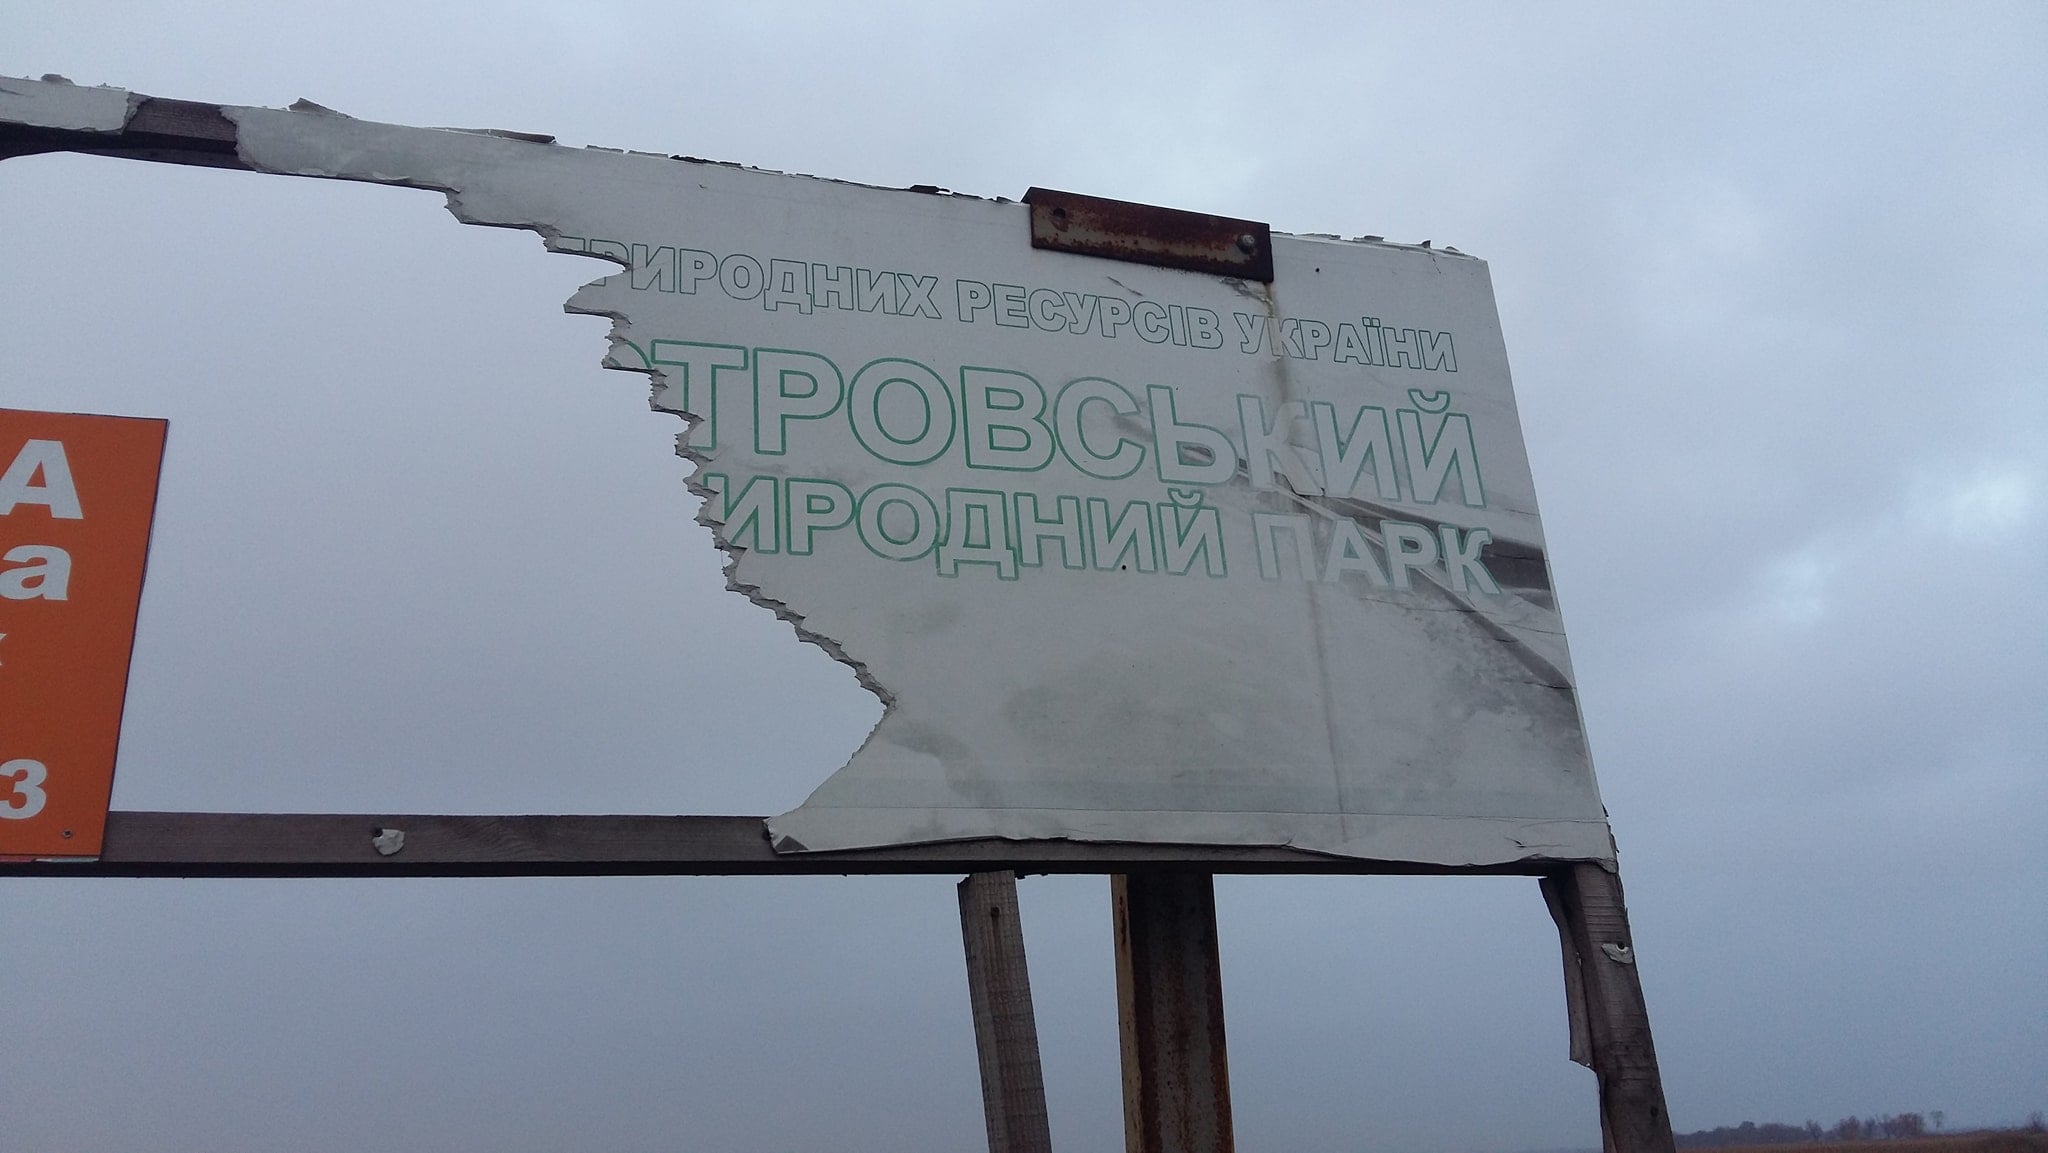 Уродливый пейзаж на фоне заповедной природы: Нижнеднестровский НПП или реклама бани на дровах